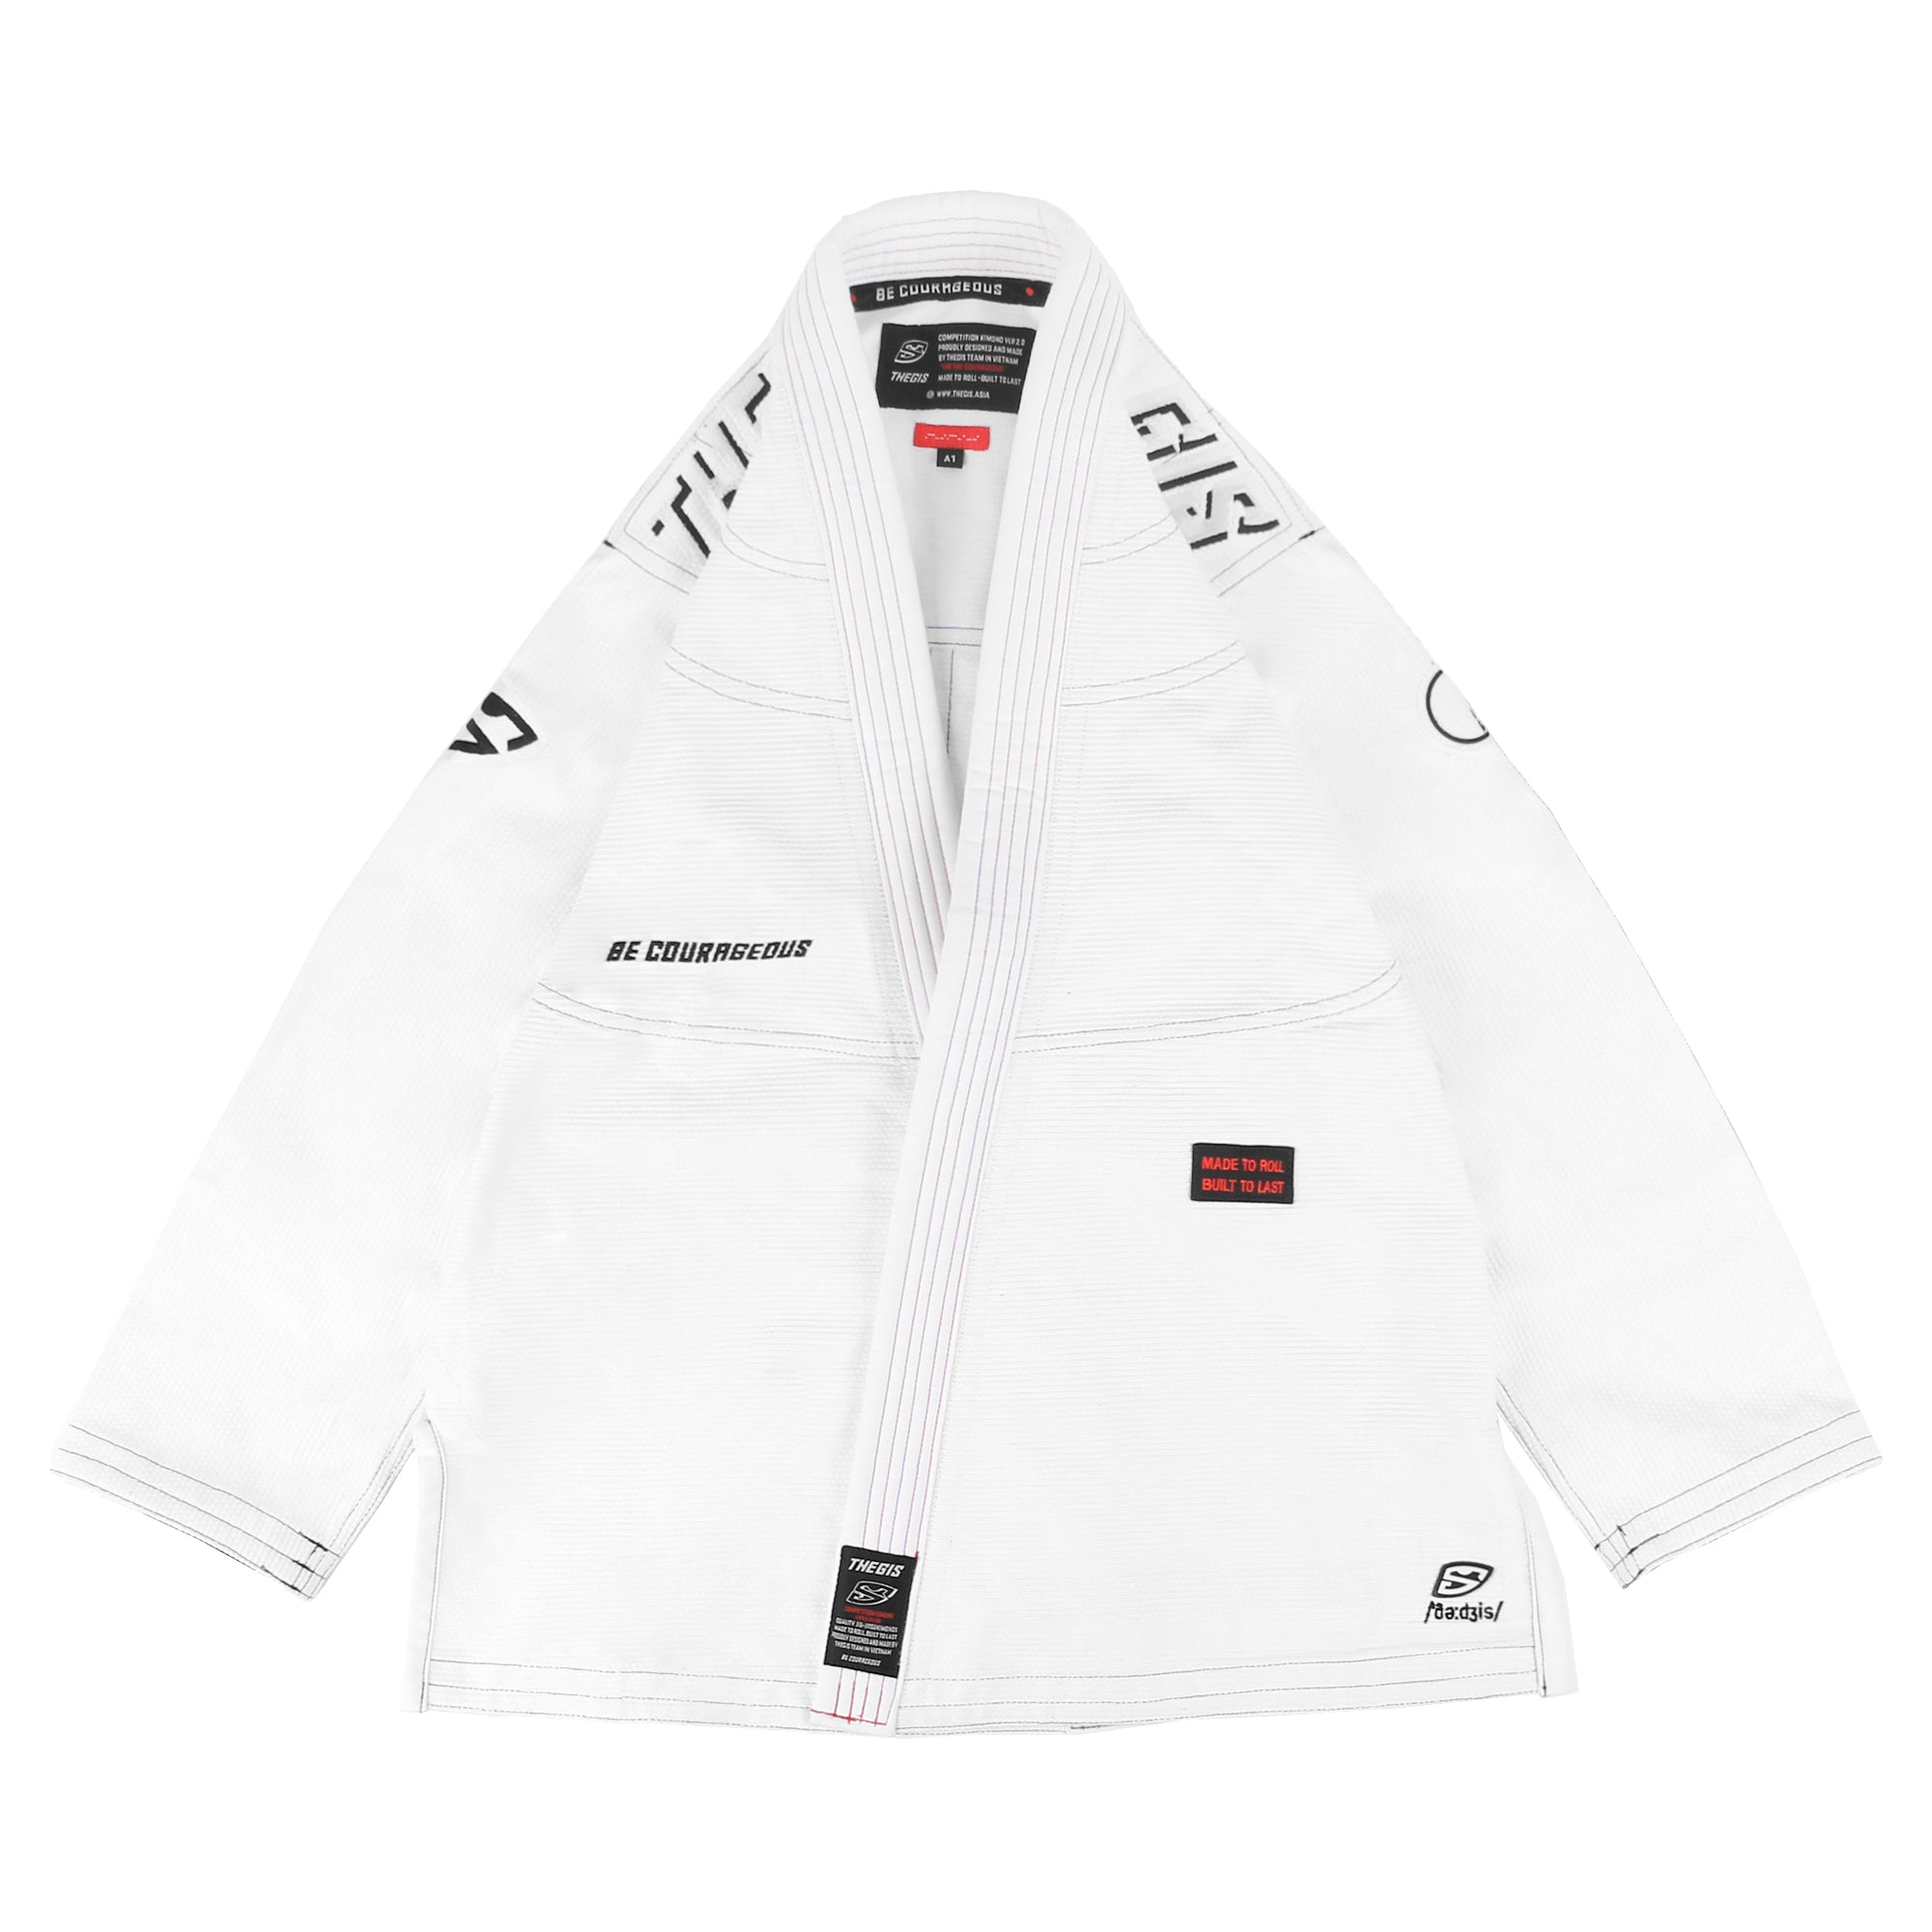 Võ phục Jiu Jitsu V2 Kimonos Premium